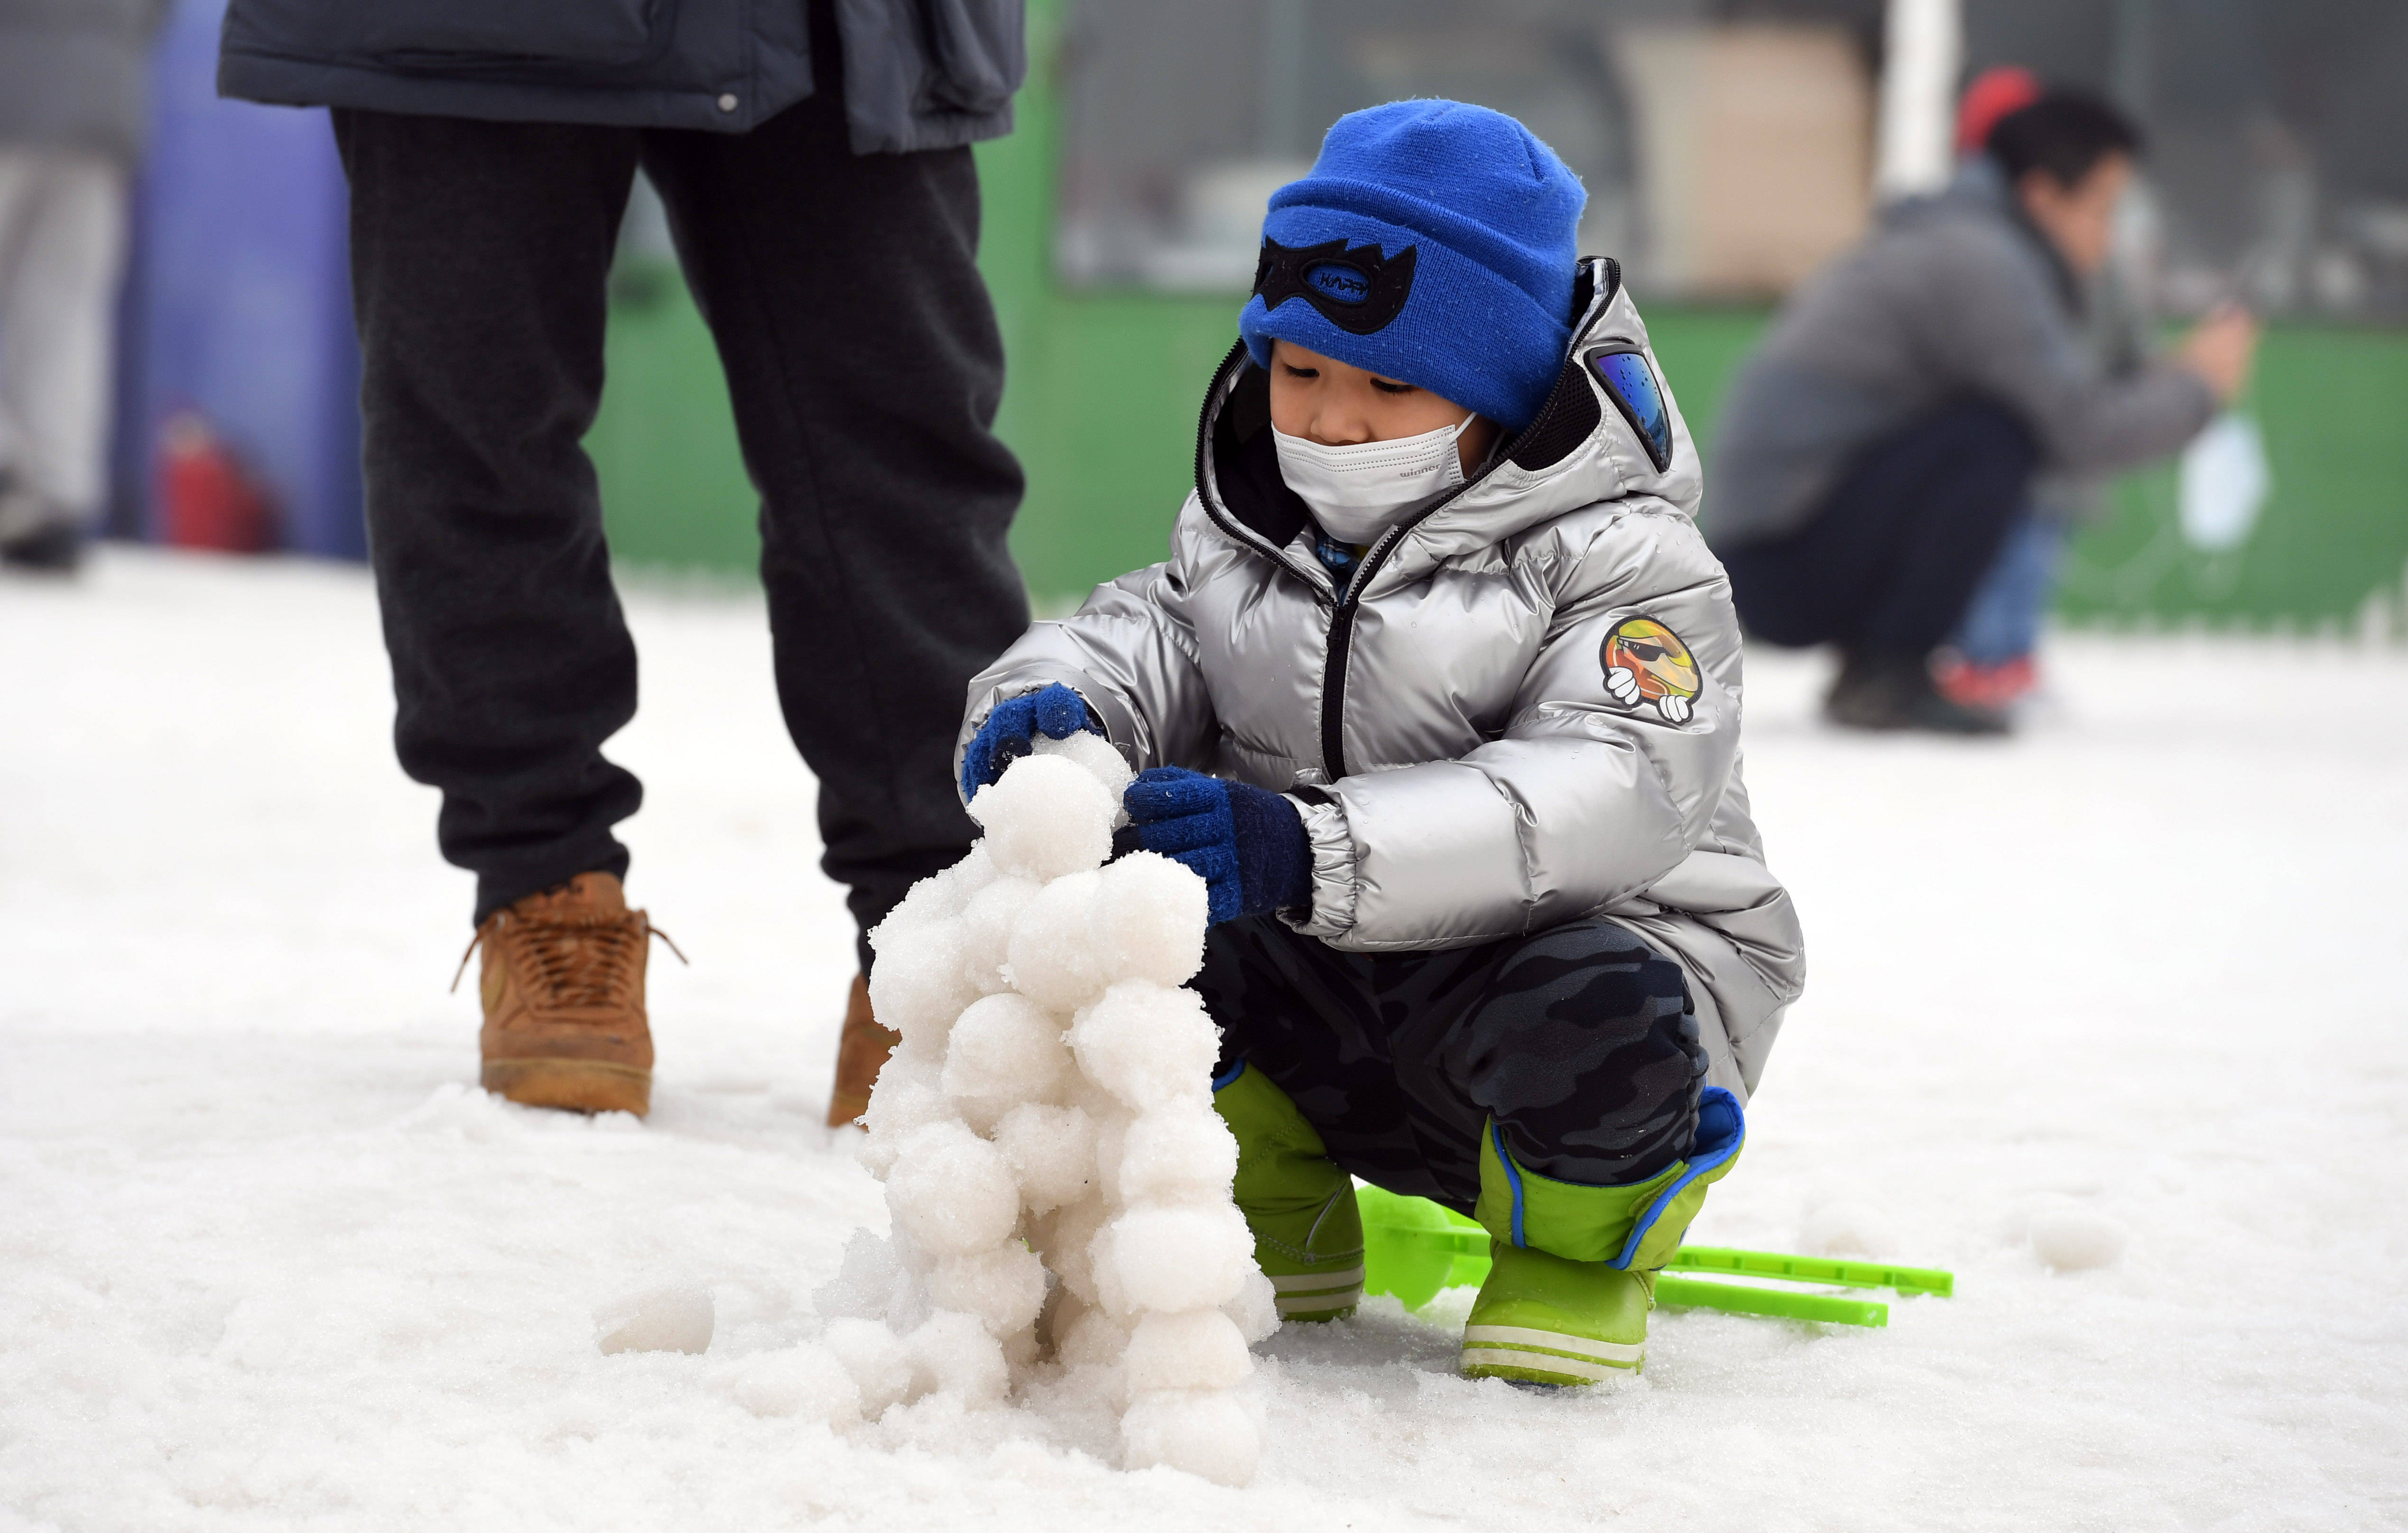 2月13日,一名小朋友在南宫露营运动乐园玩雪